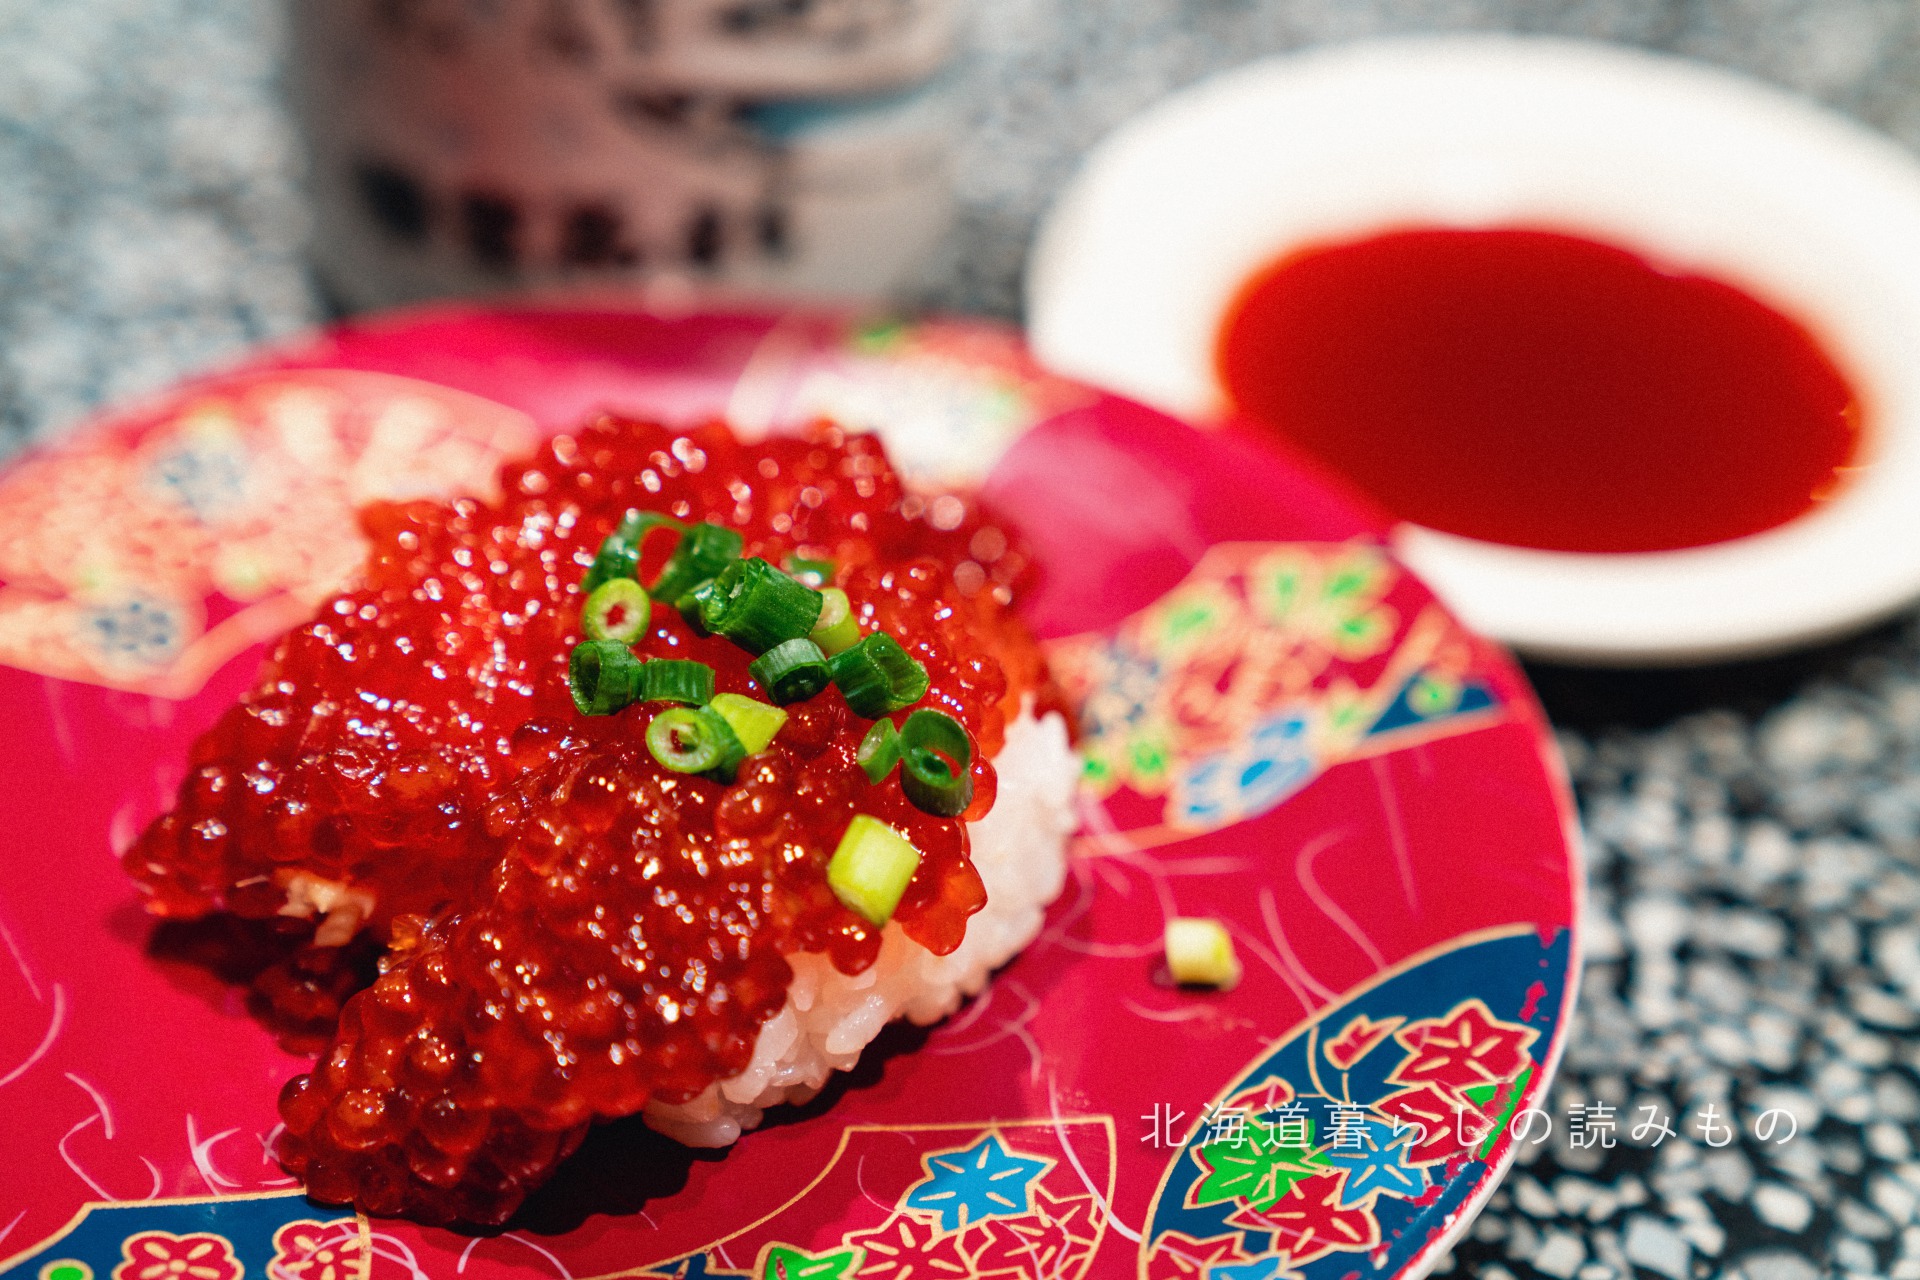 回転寿司 根室花まるのメニュー「紅鮭すじこ醤油漬け」の写真